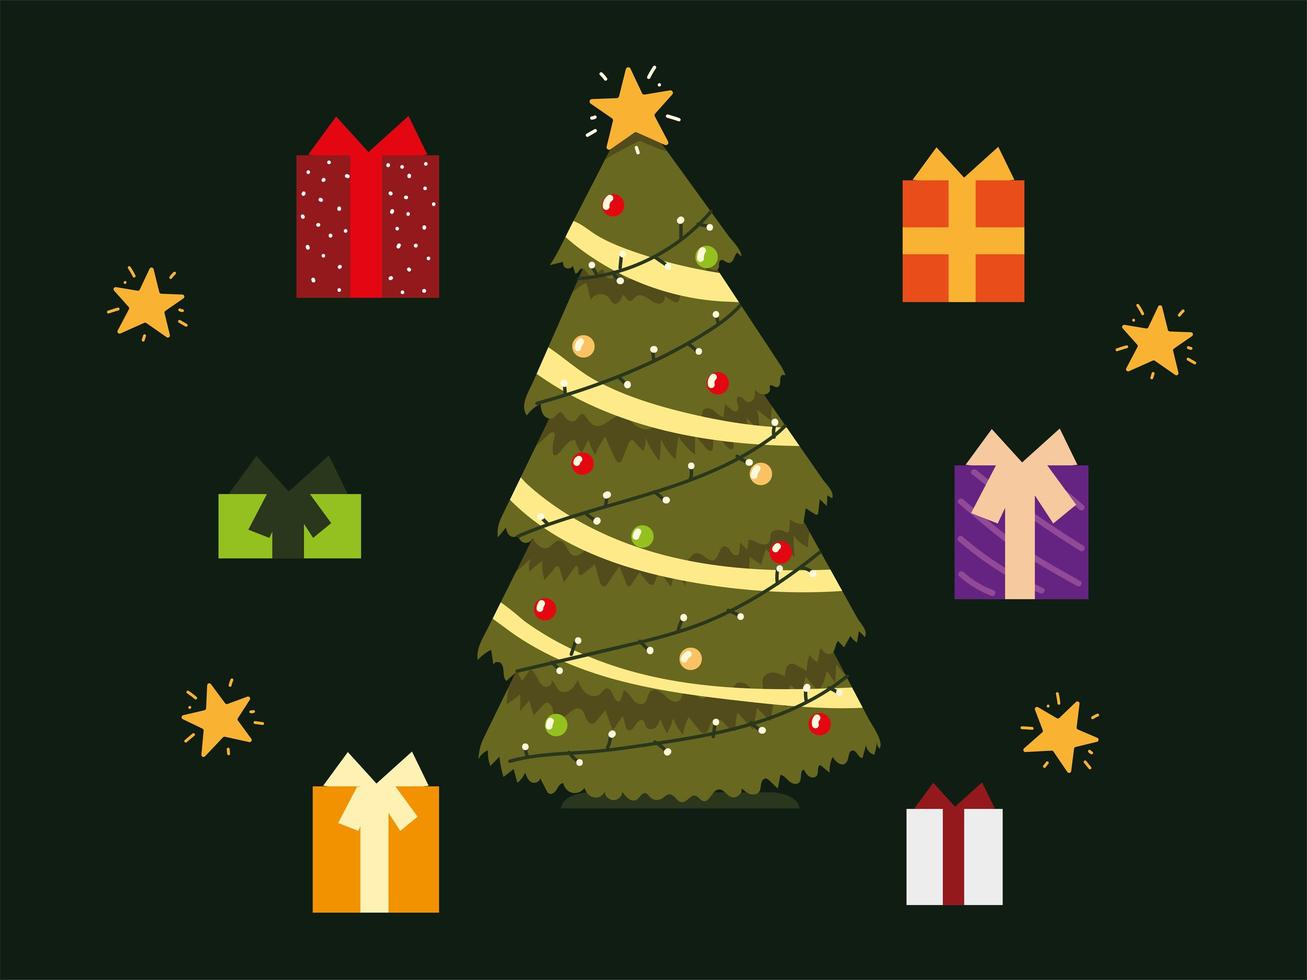 Los iconos de la fiesta de la temporada de celebración navideña incluyen árboles y cajas de regalo vector